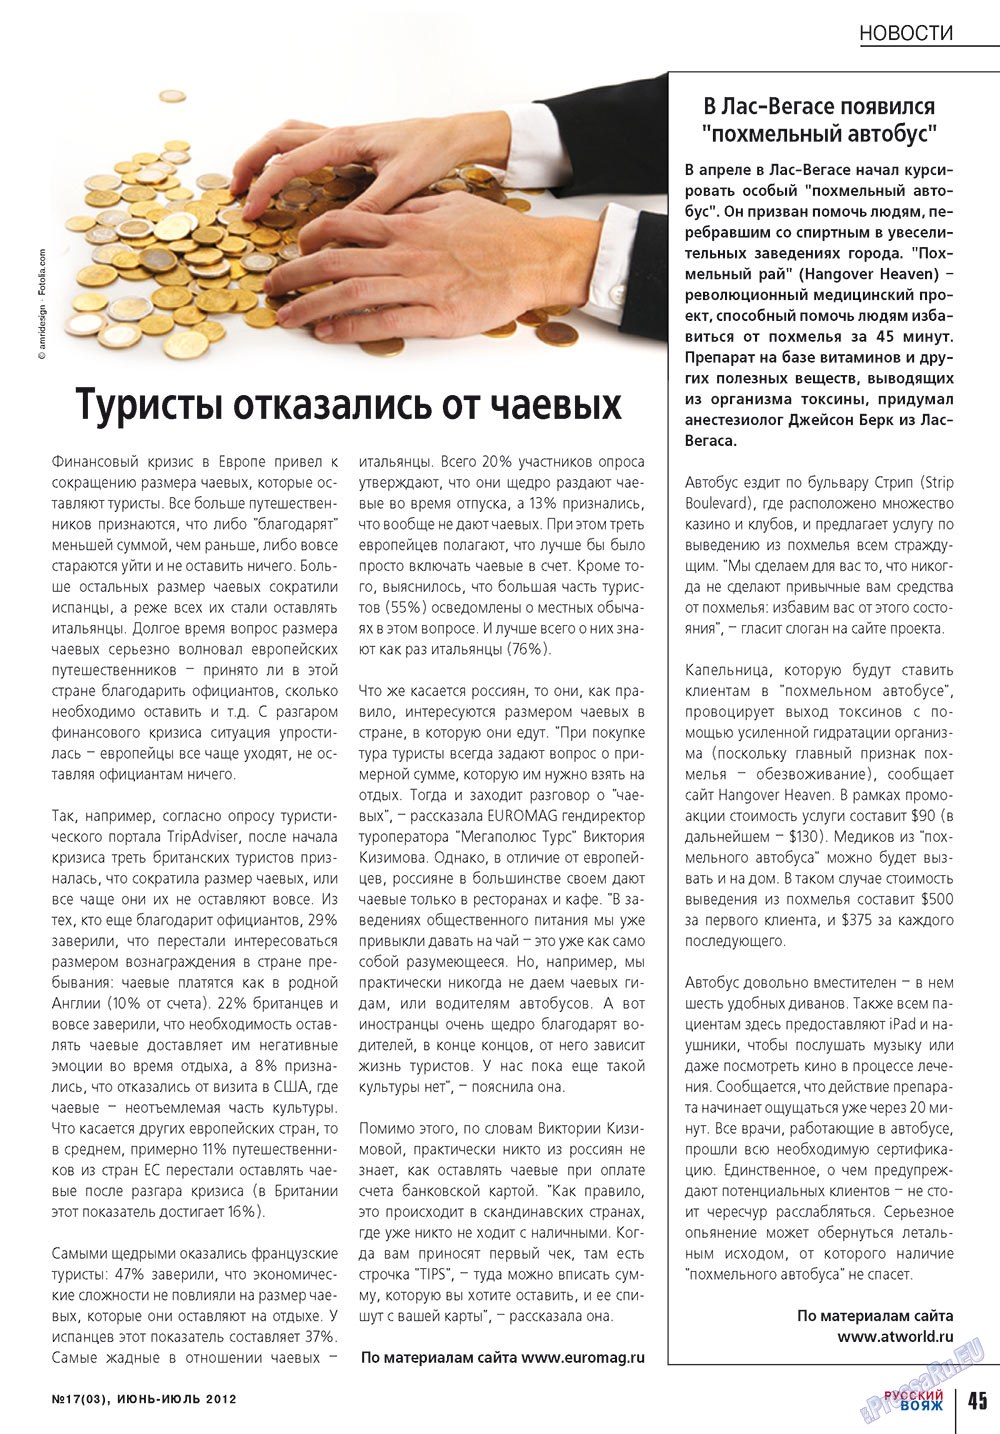 Русский вояж (журнал). 2012 год, номер 17, стр. 45